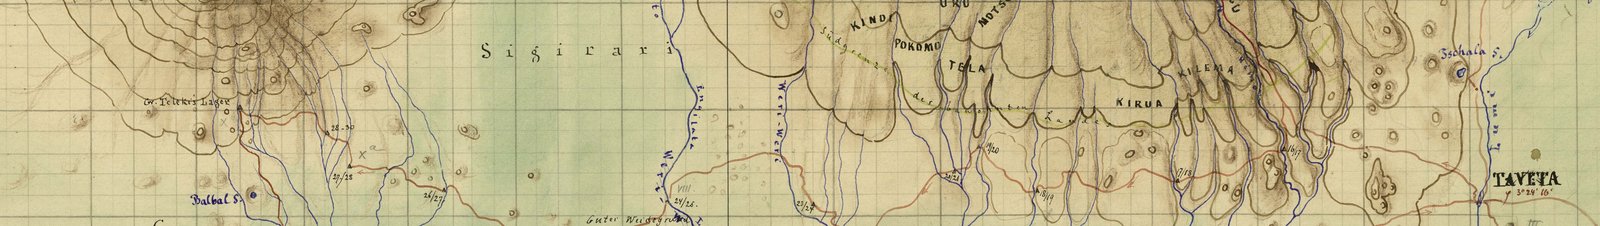 Ausschnitt Karte Hassenstein Kilimandscharo 1888